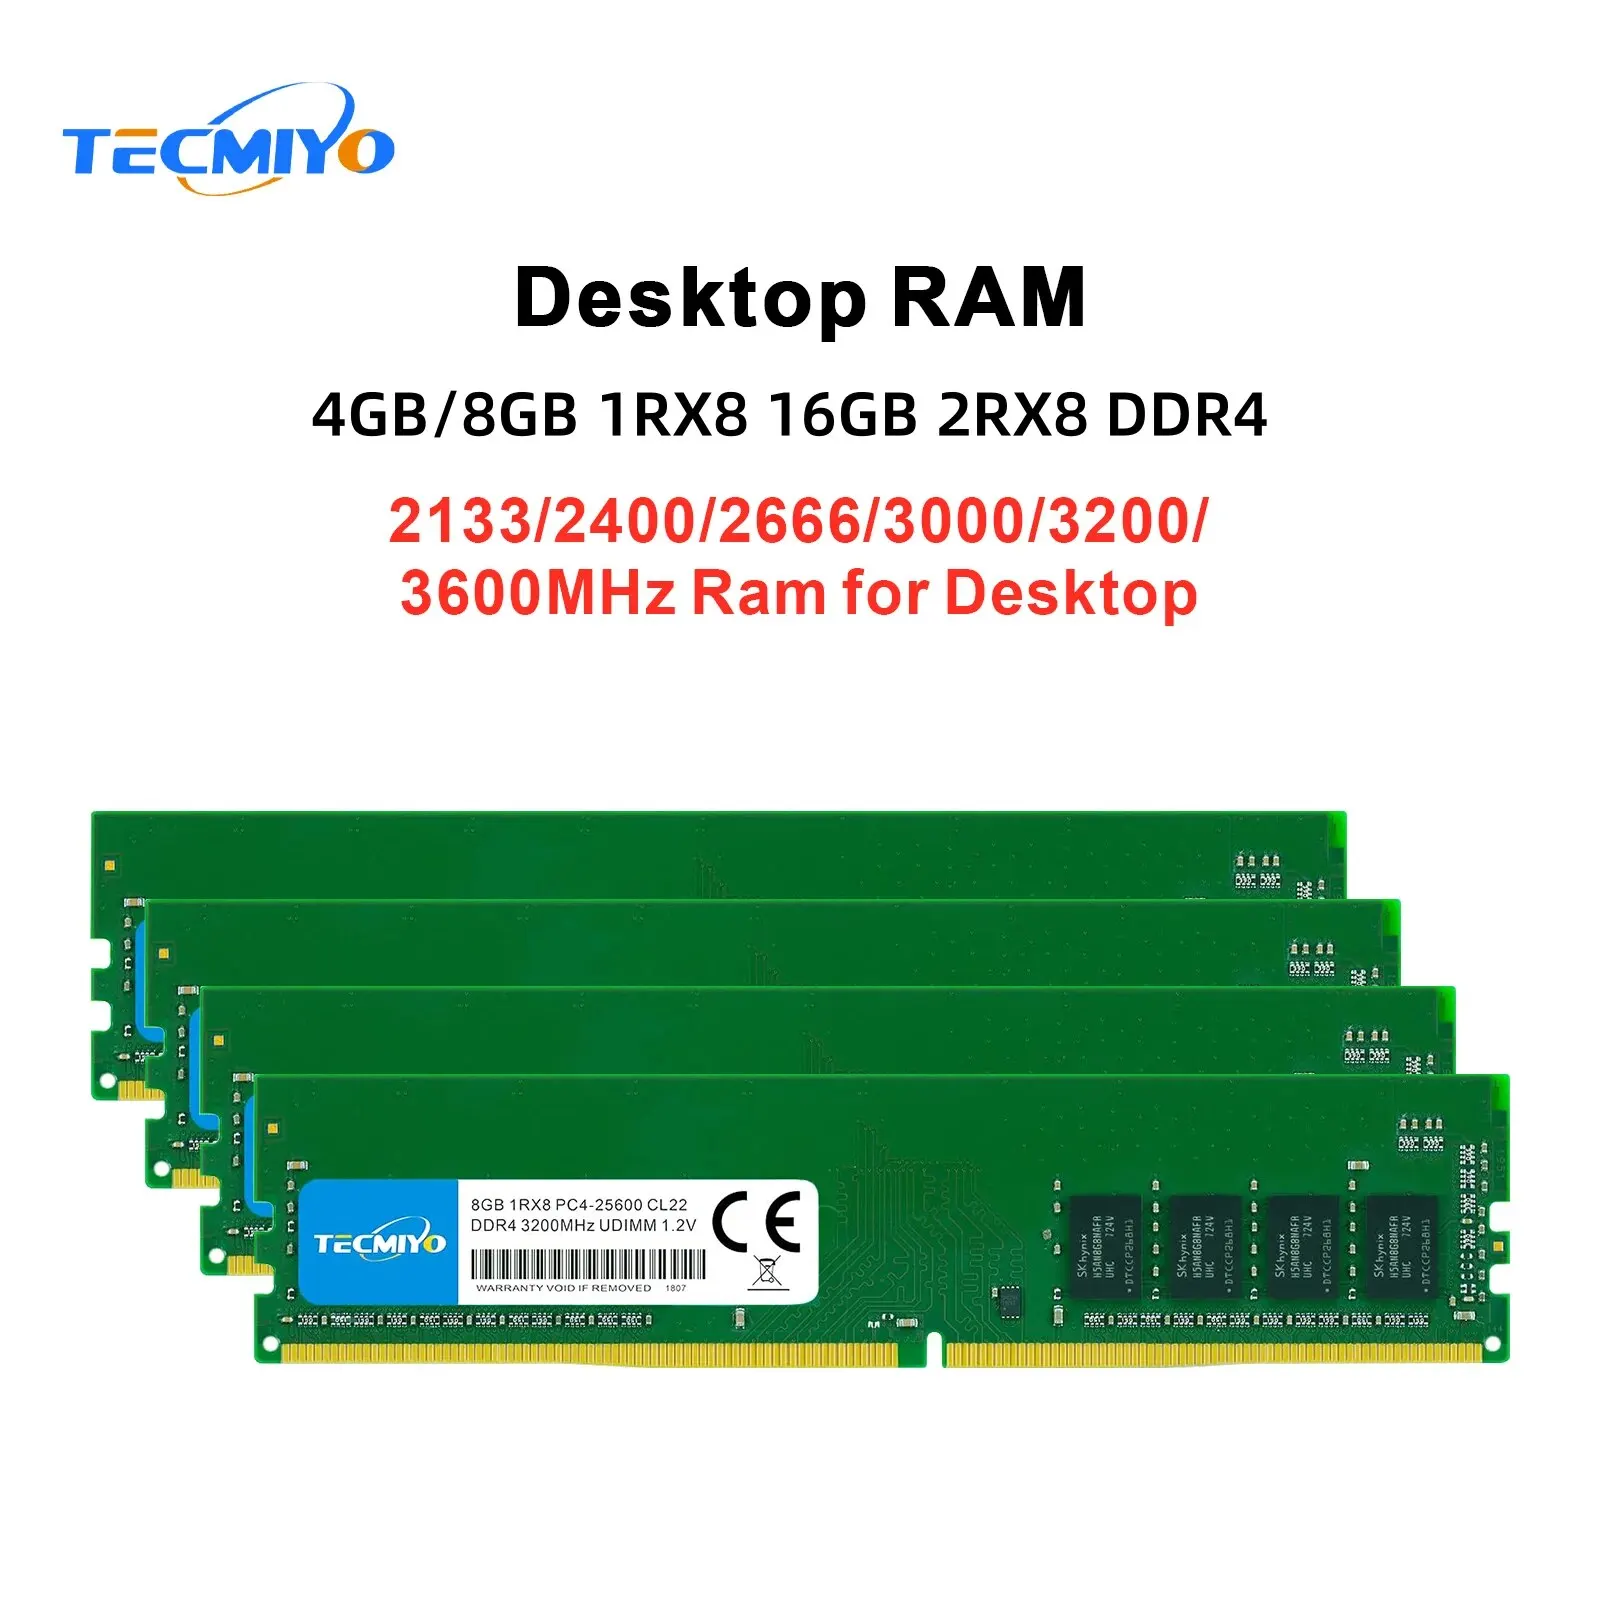 TECMIYO ũž ޸ RAM, DDR4, 2133MHz, 2400MHz, 2666MHz, 3000MHz, 3200MHz, 3600MHz, 1RX8, 2RX8, Non-ECC -1PC, 4GB, 8GB